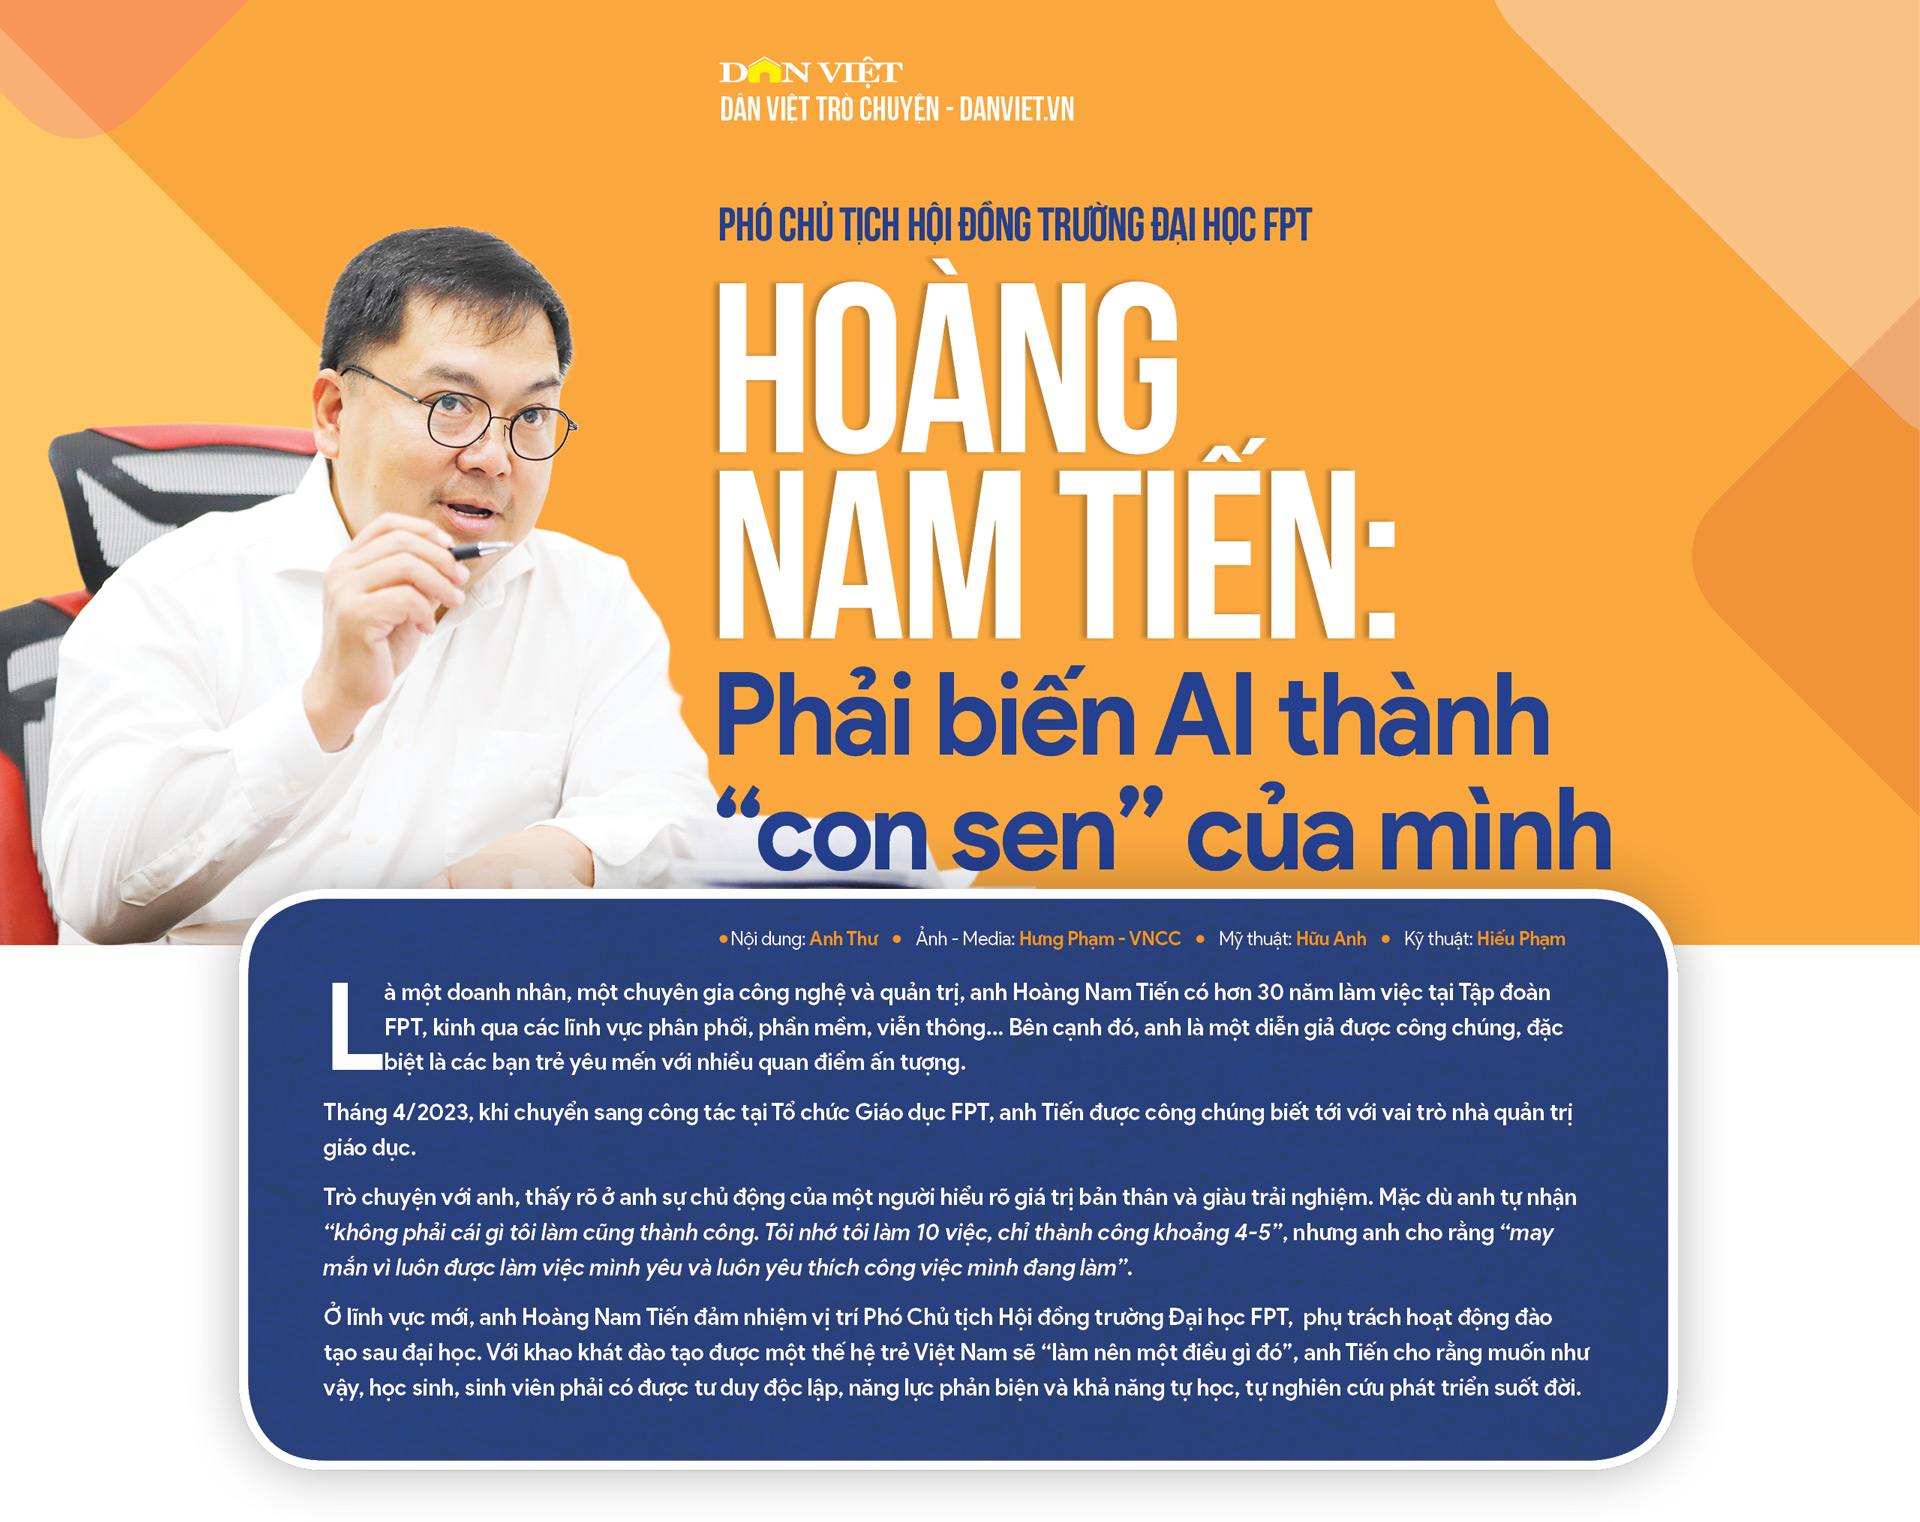 Phó Chủ tịch Hội đồng trường Đại học FPT Hoàng Nam Tiến: Phải biến AI thành “con sen” của mình